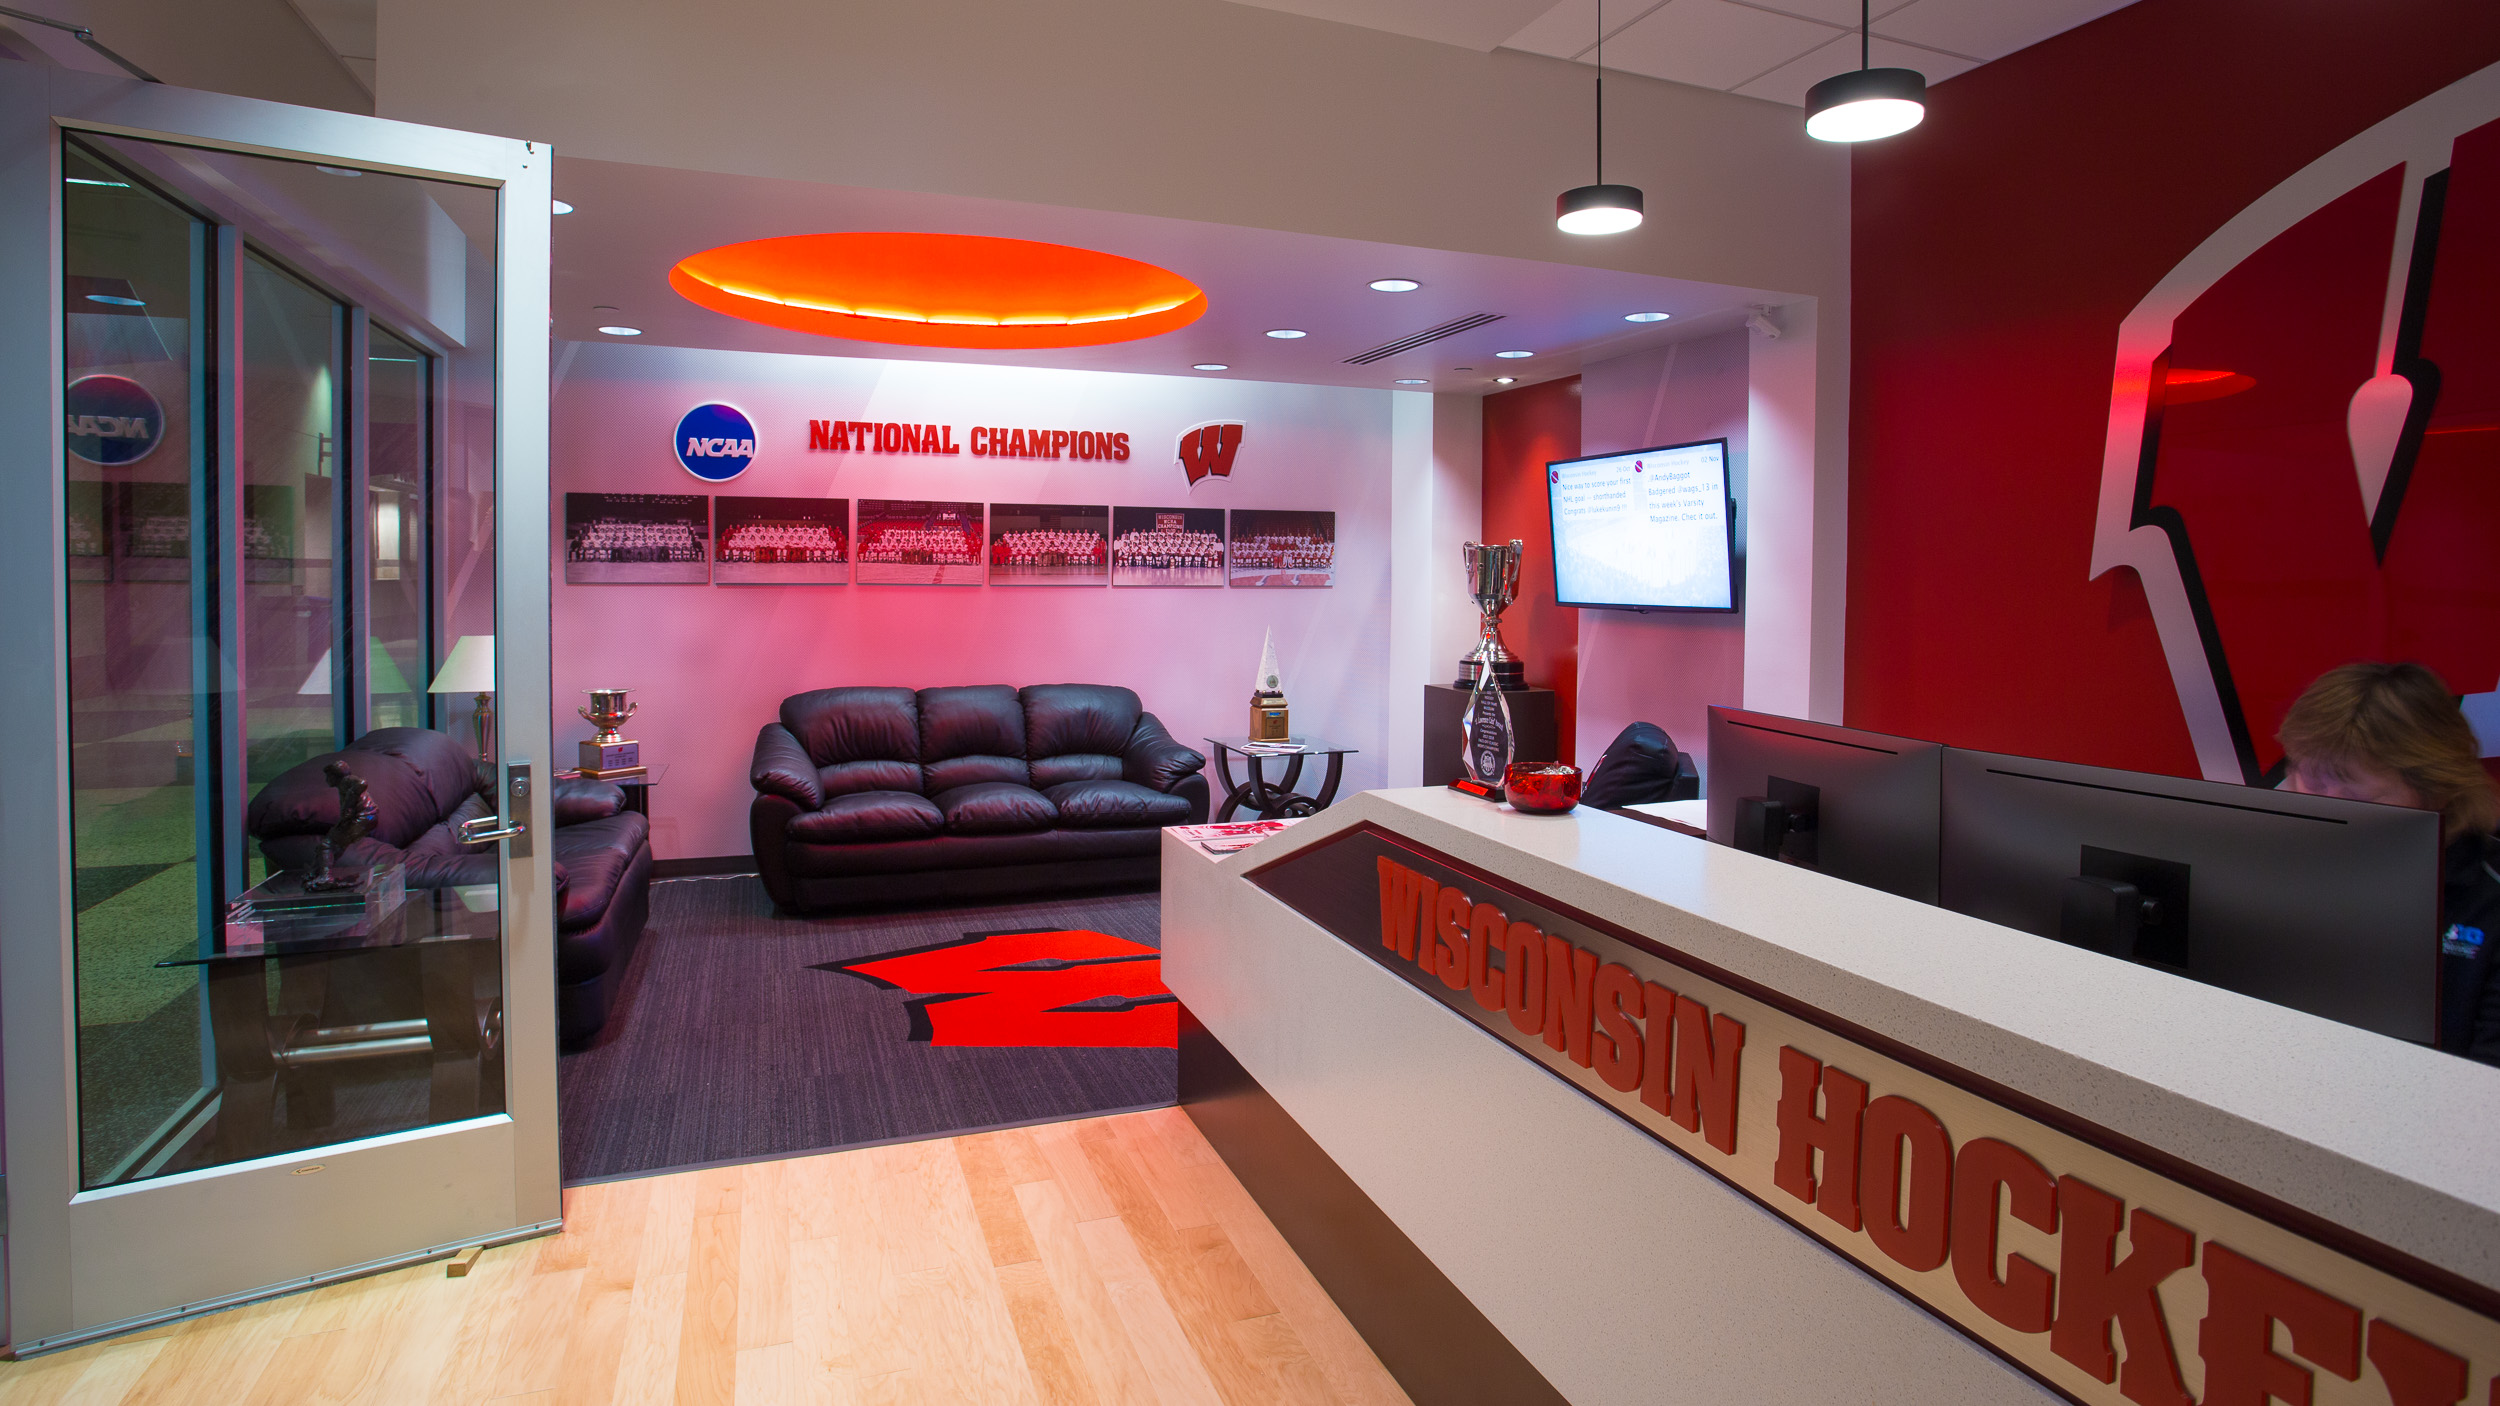 University of Wisconsin - Hockey Offices Lobby Facility Branding